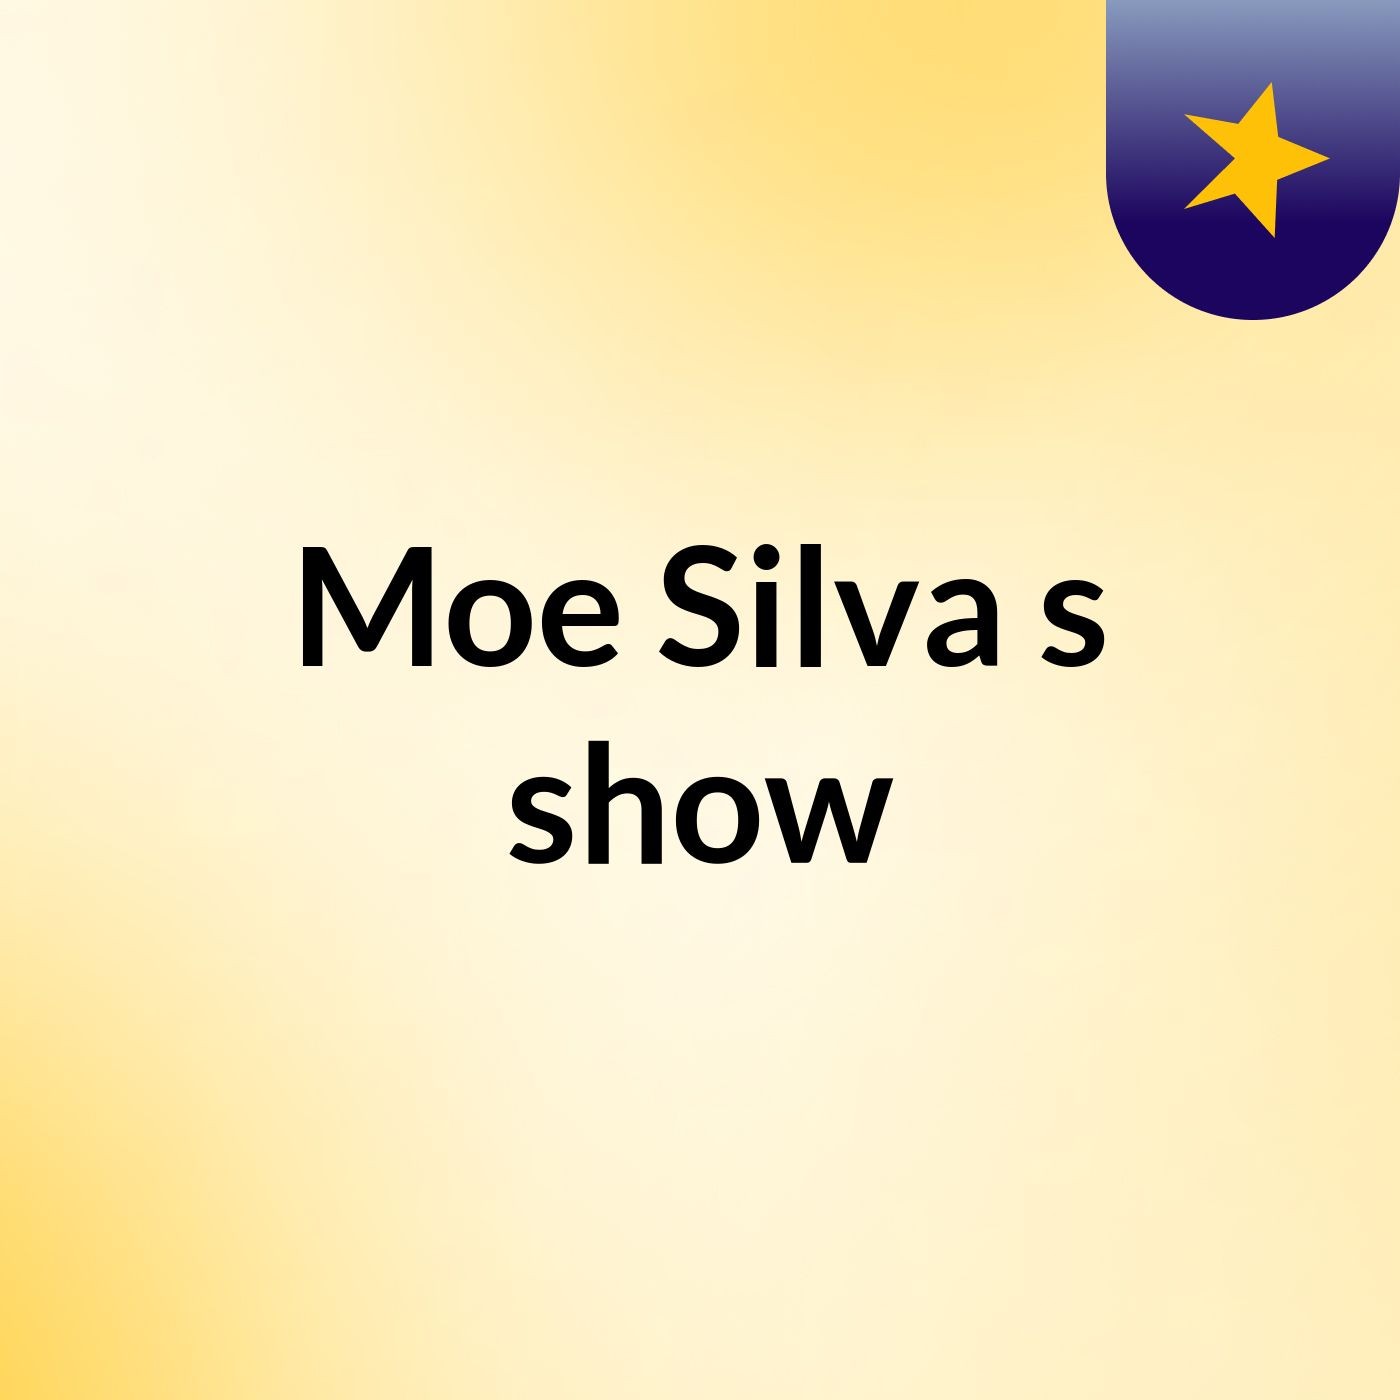 Moe Silva's show